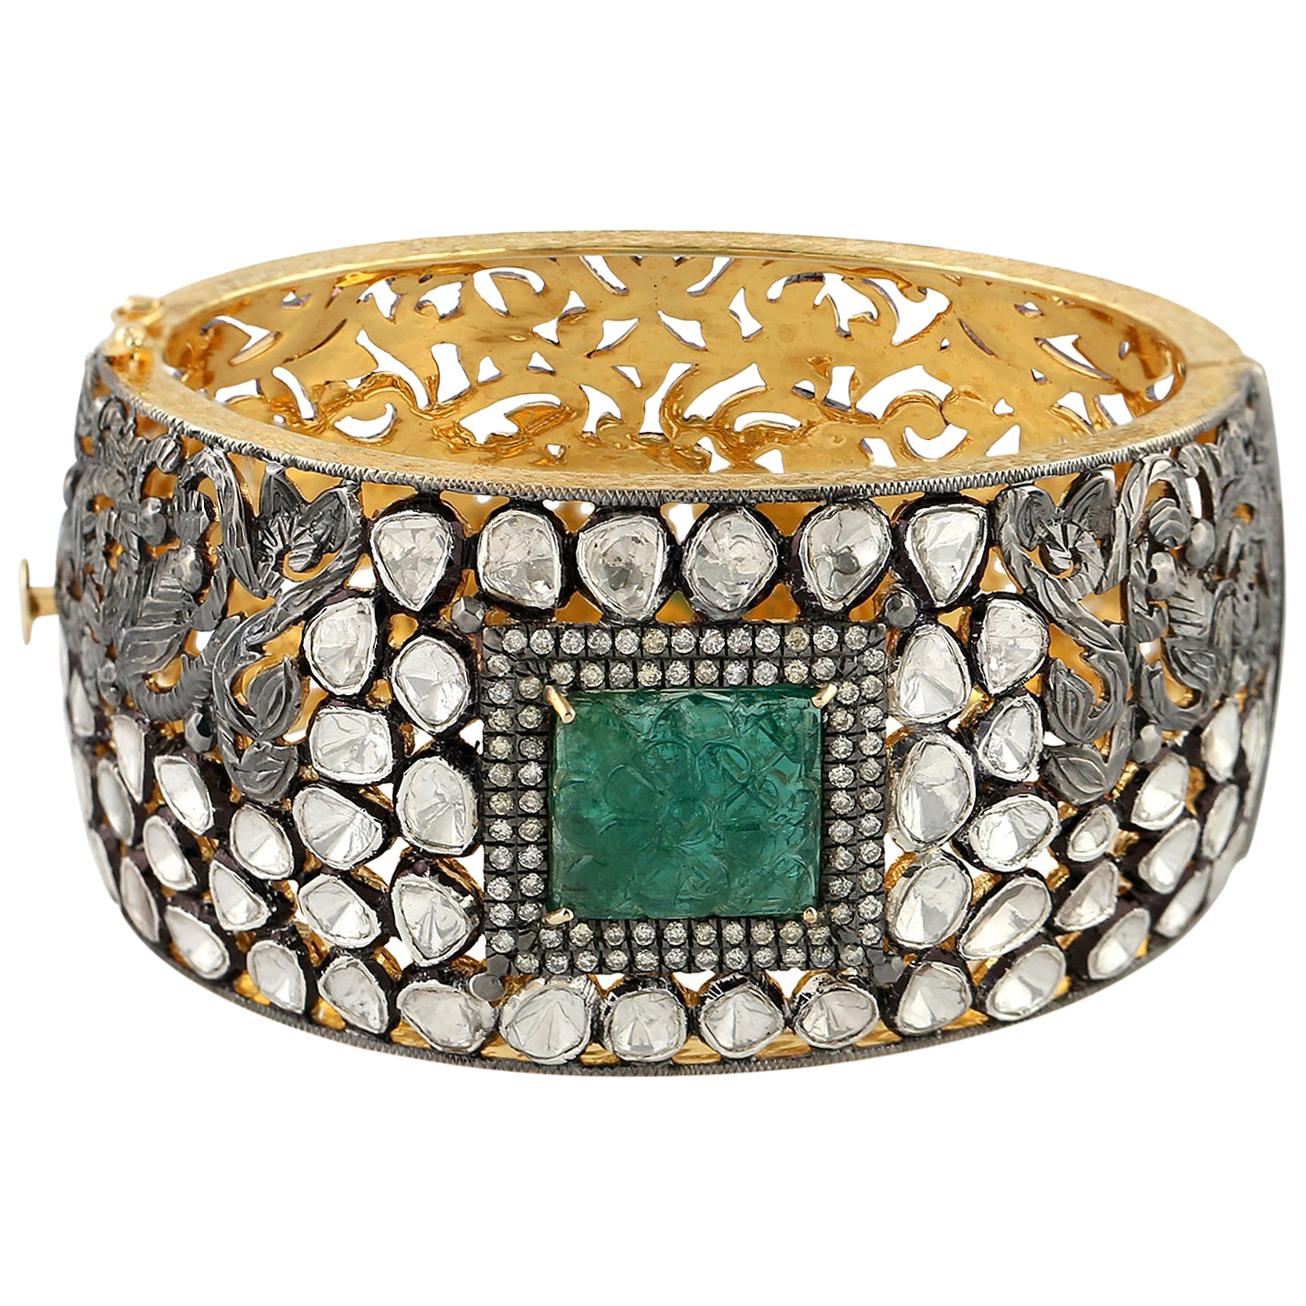 12.64 Carat Rose Cut Diamond Emerald Bracelet Cuff